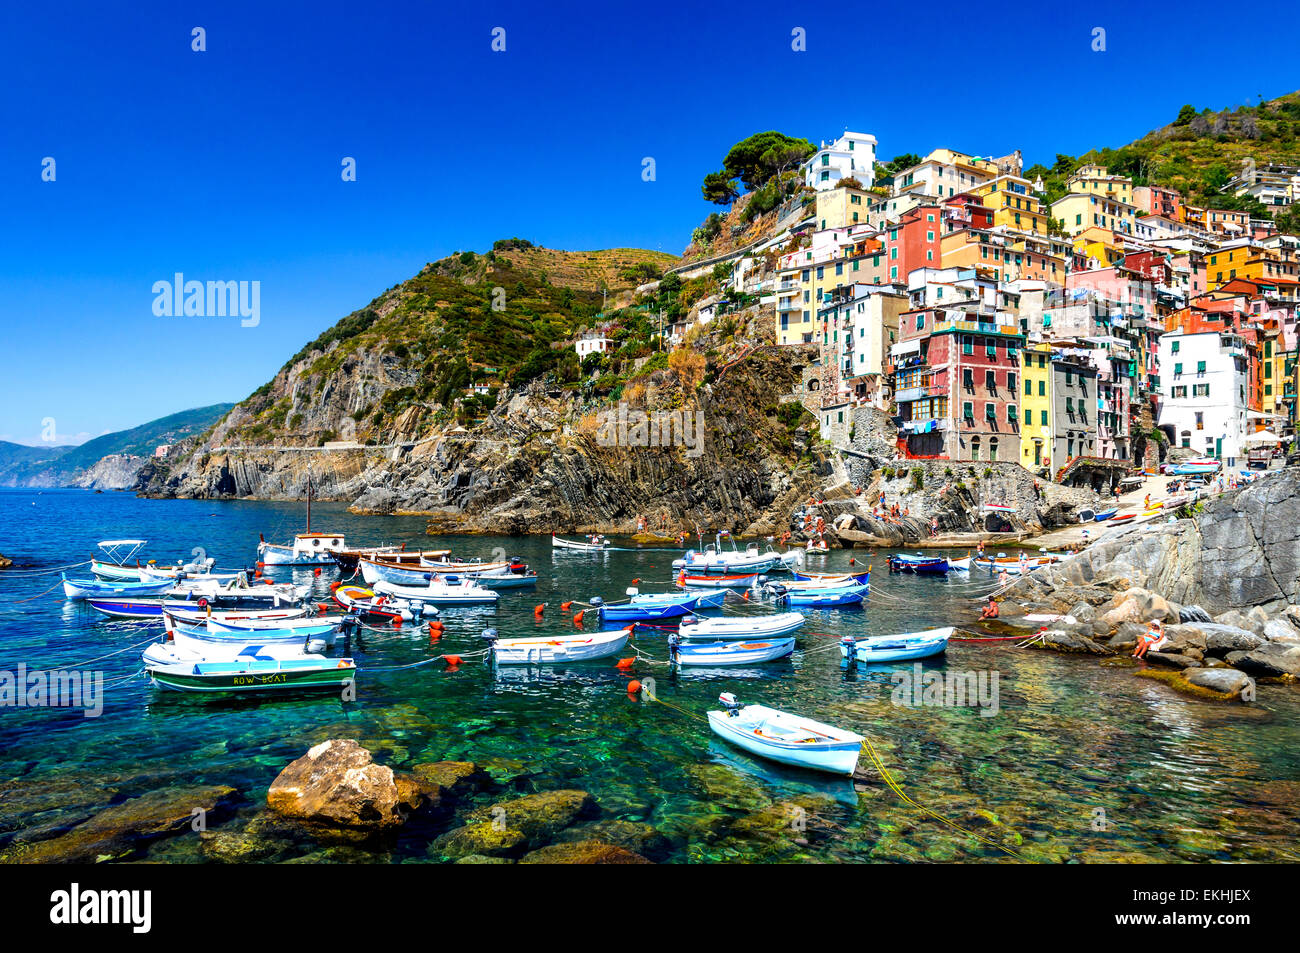 Cinque Terre. Riomaggiore village in a small valley in the Liguria region of Italy. Stock Photo